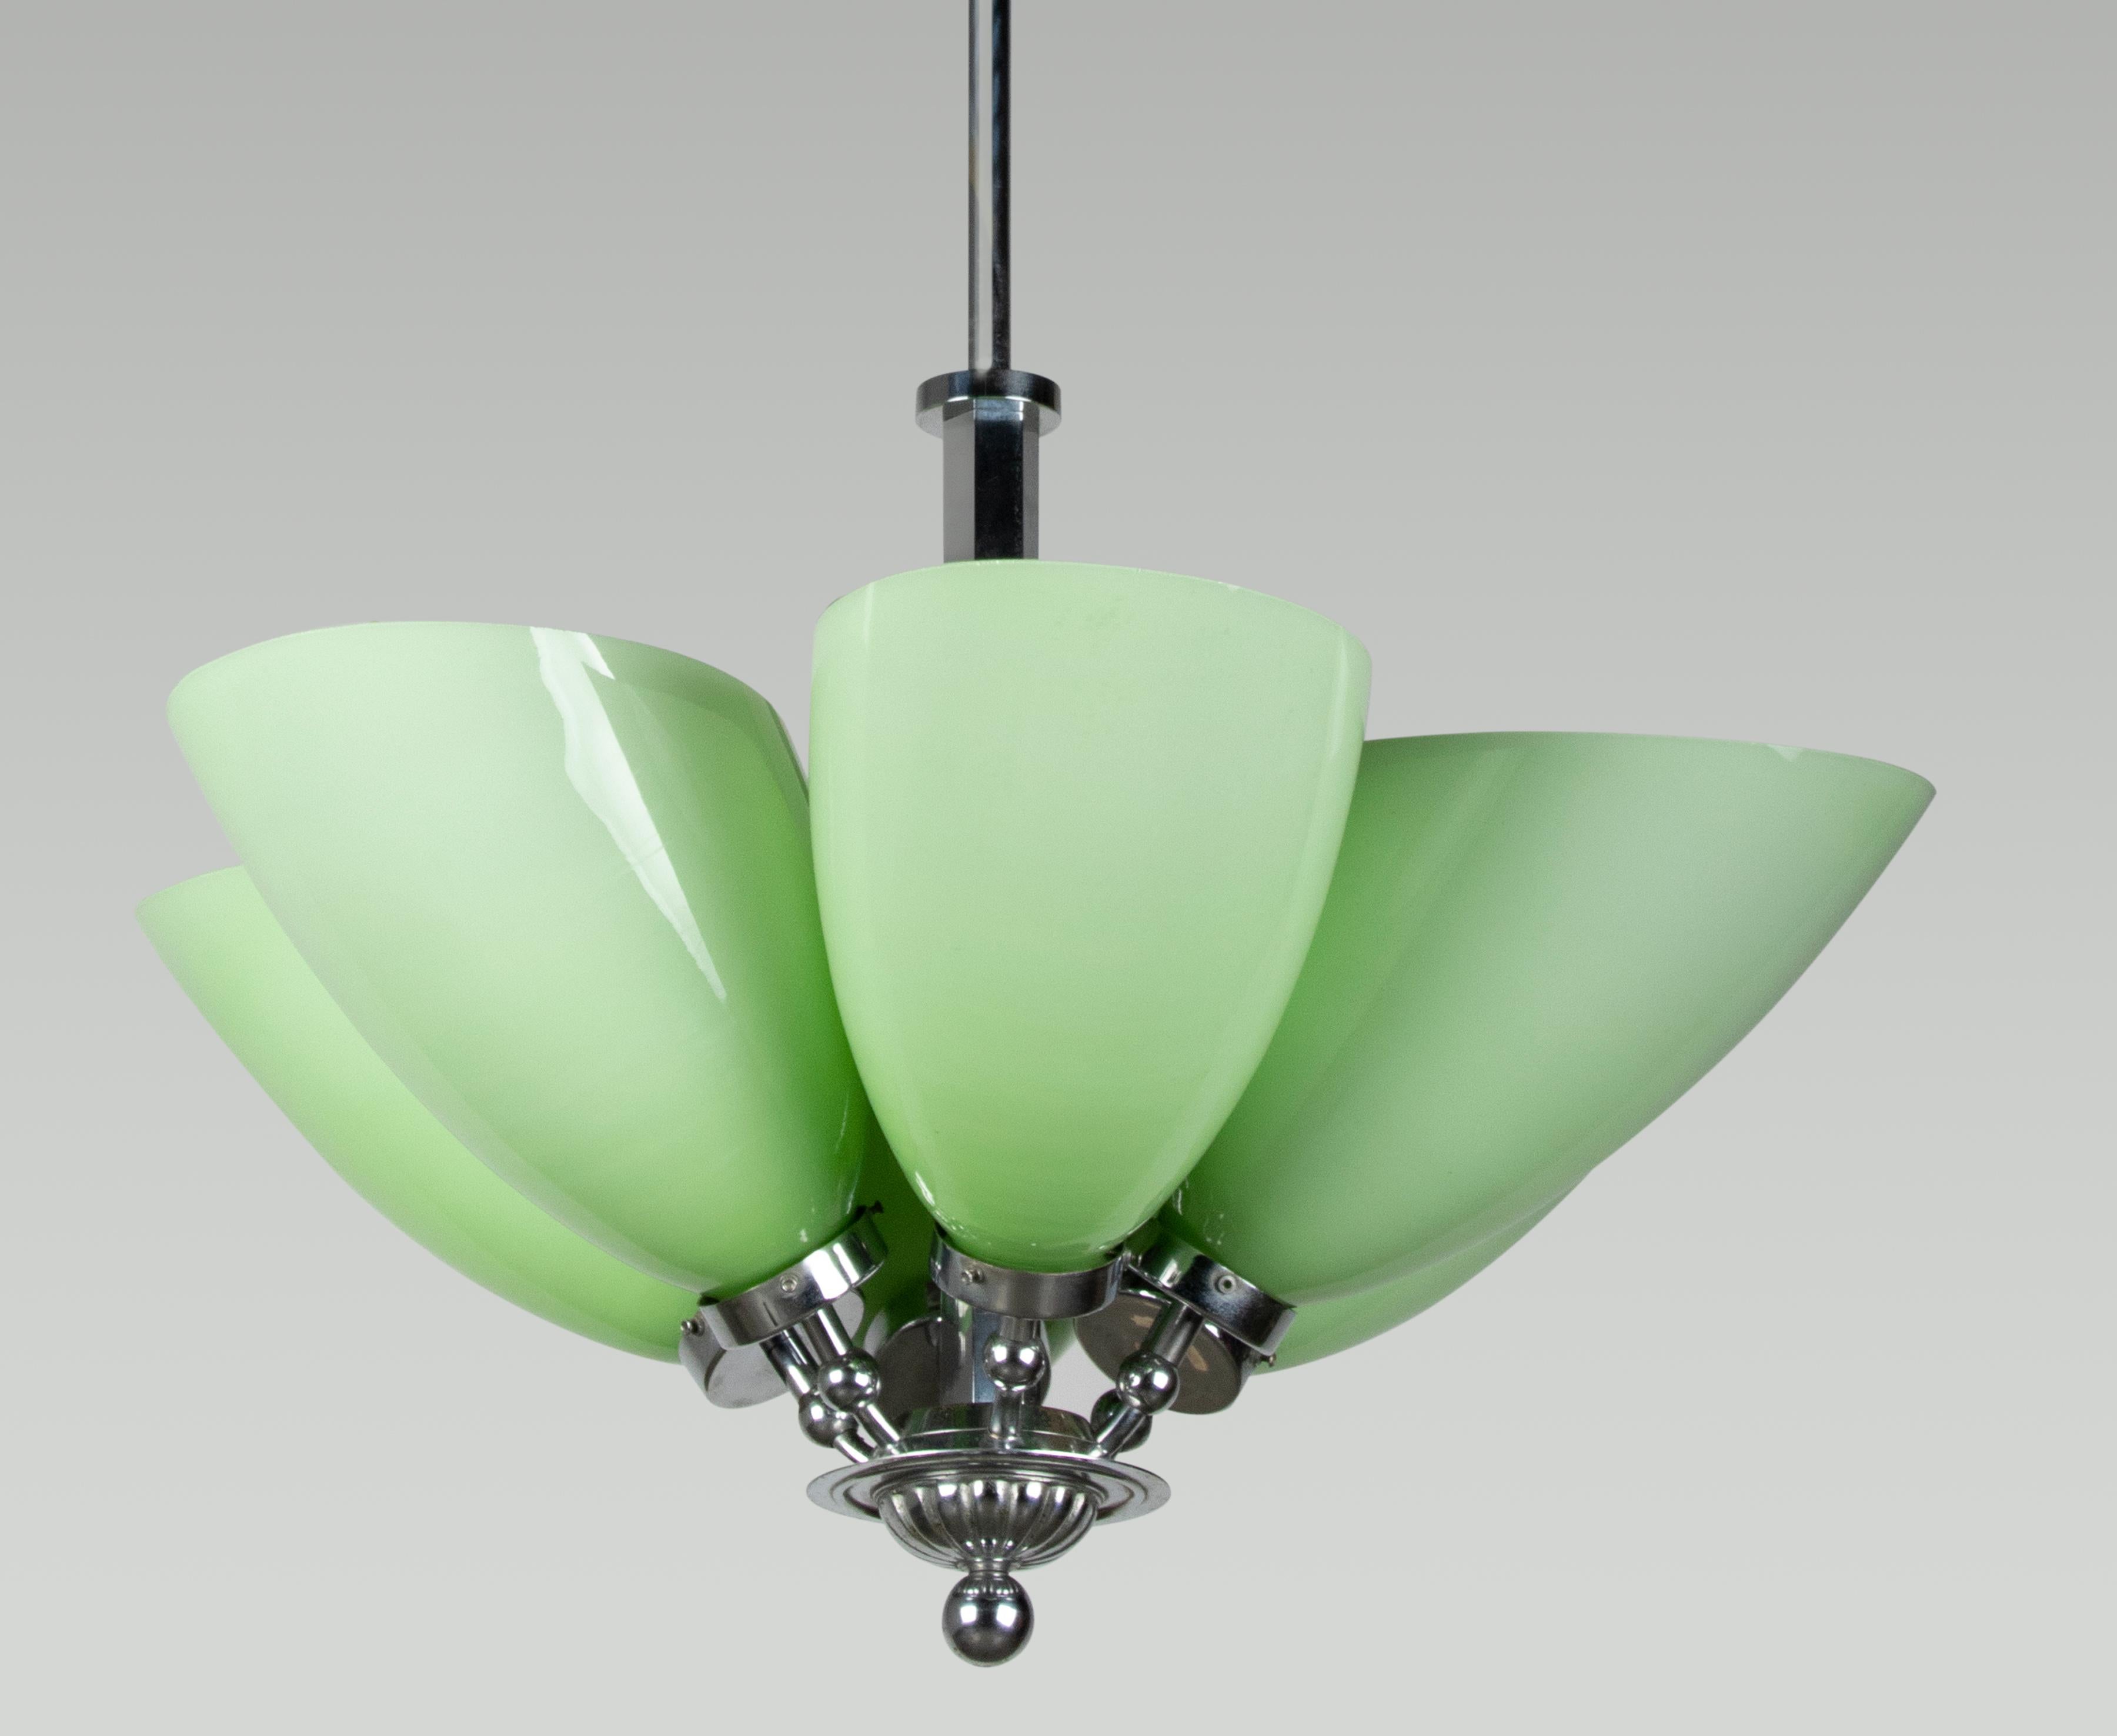 Schöner Art-Deco-Kronleuchter mit großen grünen Glasschirmen. Die Leuchte ist aus verchromtem Metall gefertigt. Die Glasschirme sind aus Opalglas gefertigt, das einen subtilen Farbverlauf von hellem zu dunklerem Grün aufweist. Die Lampe spendet ein